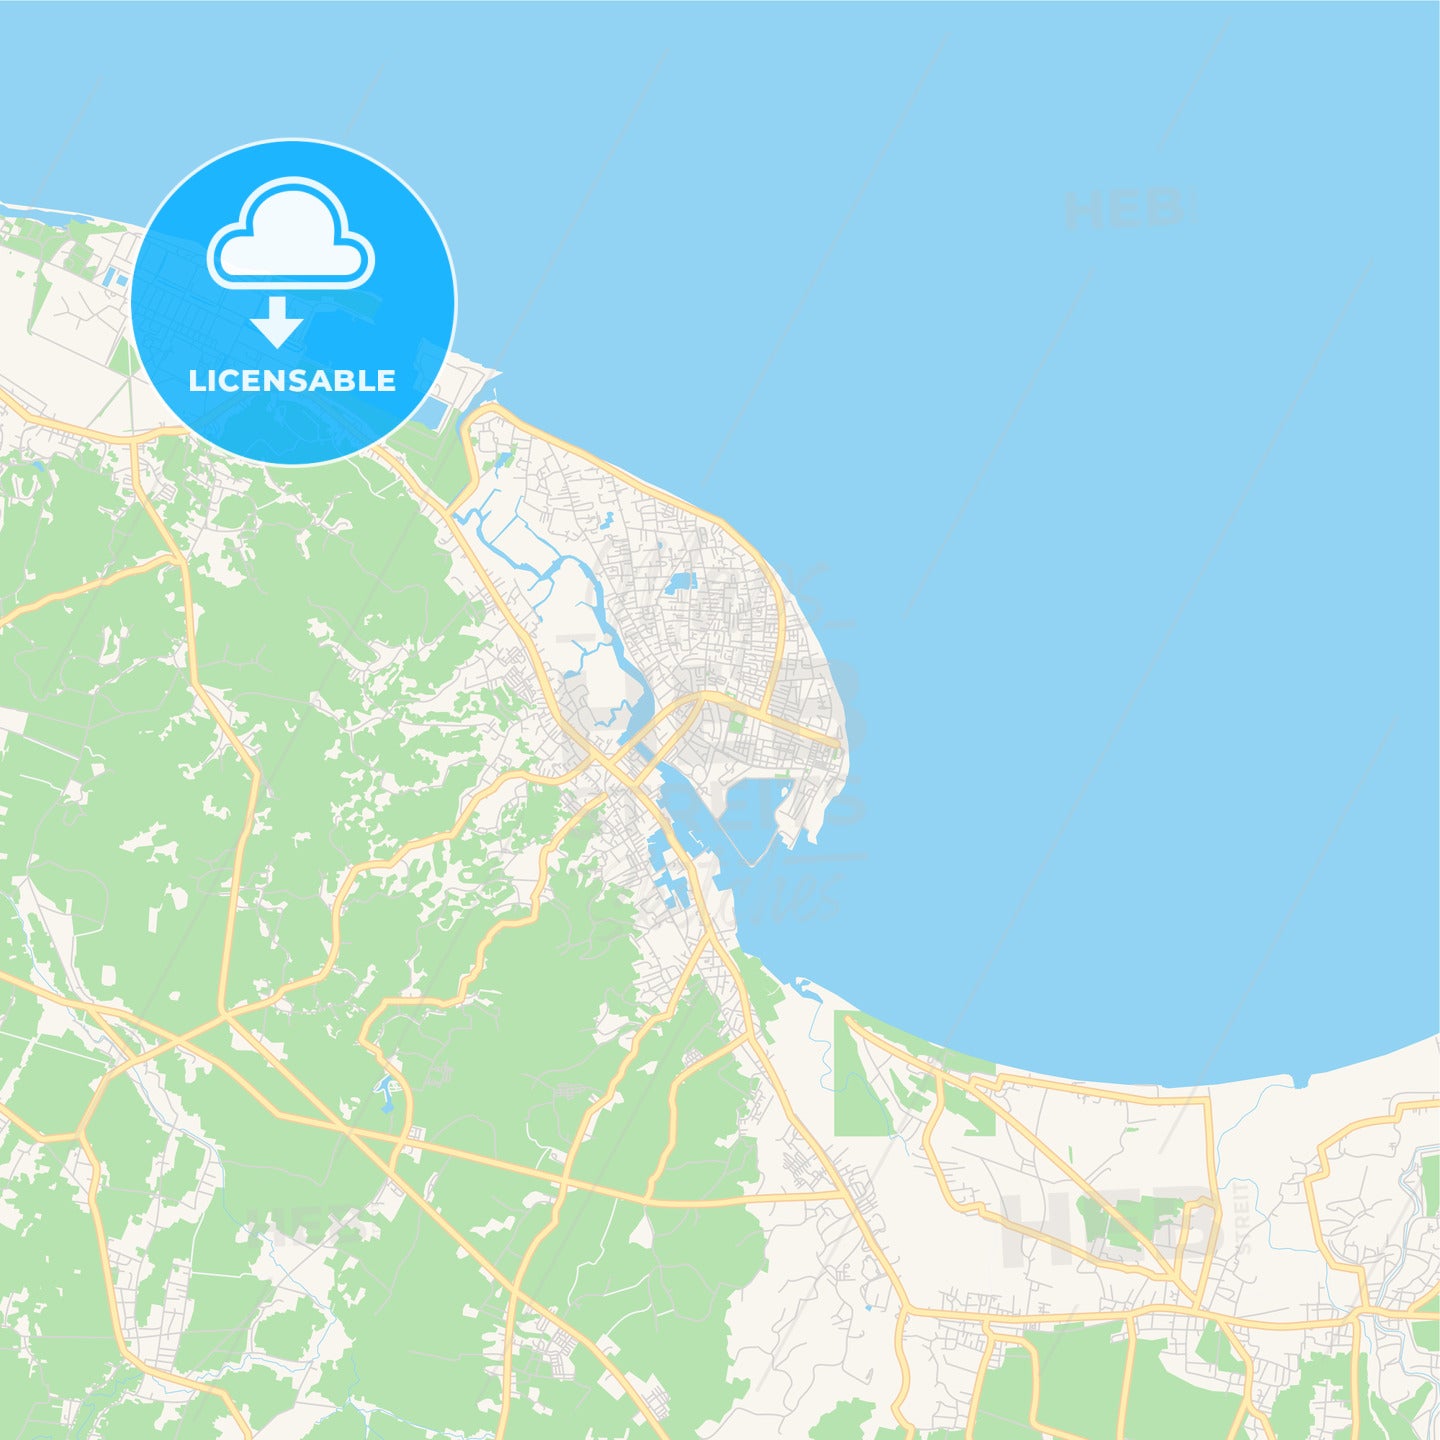 Printable street map of Lhokseumawe, Indonesia